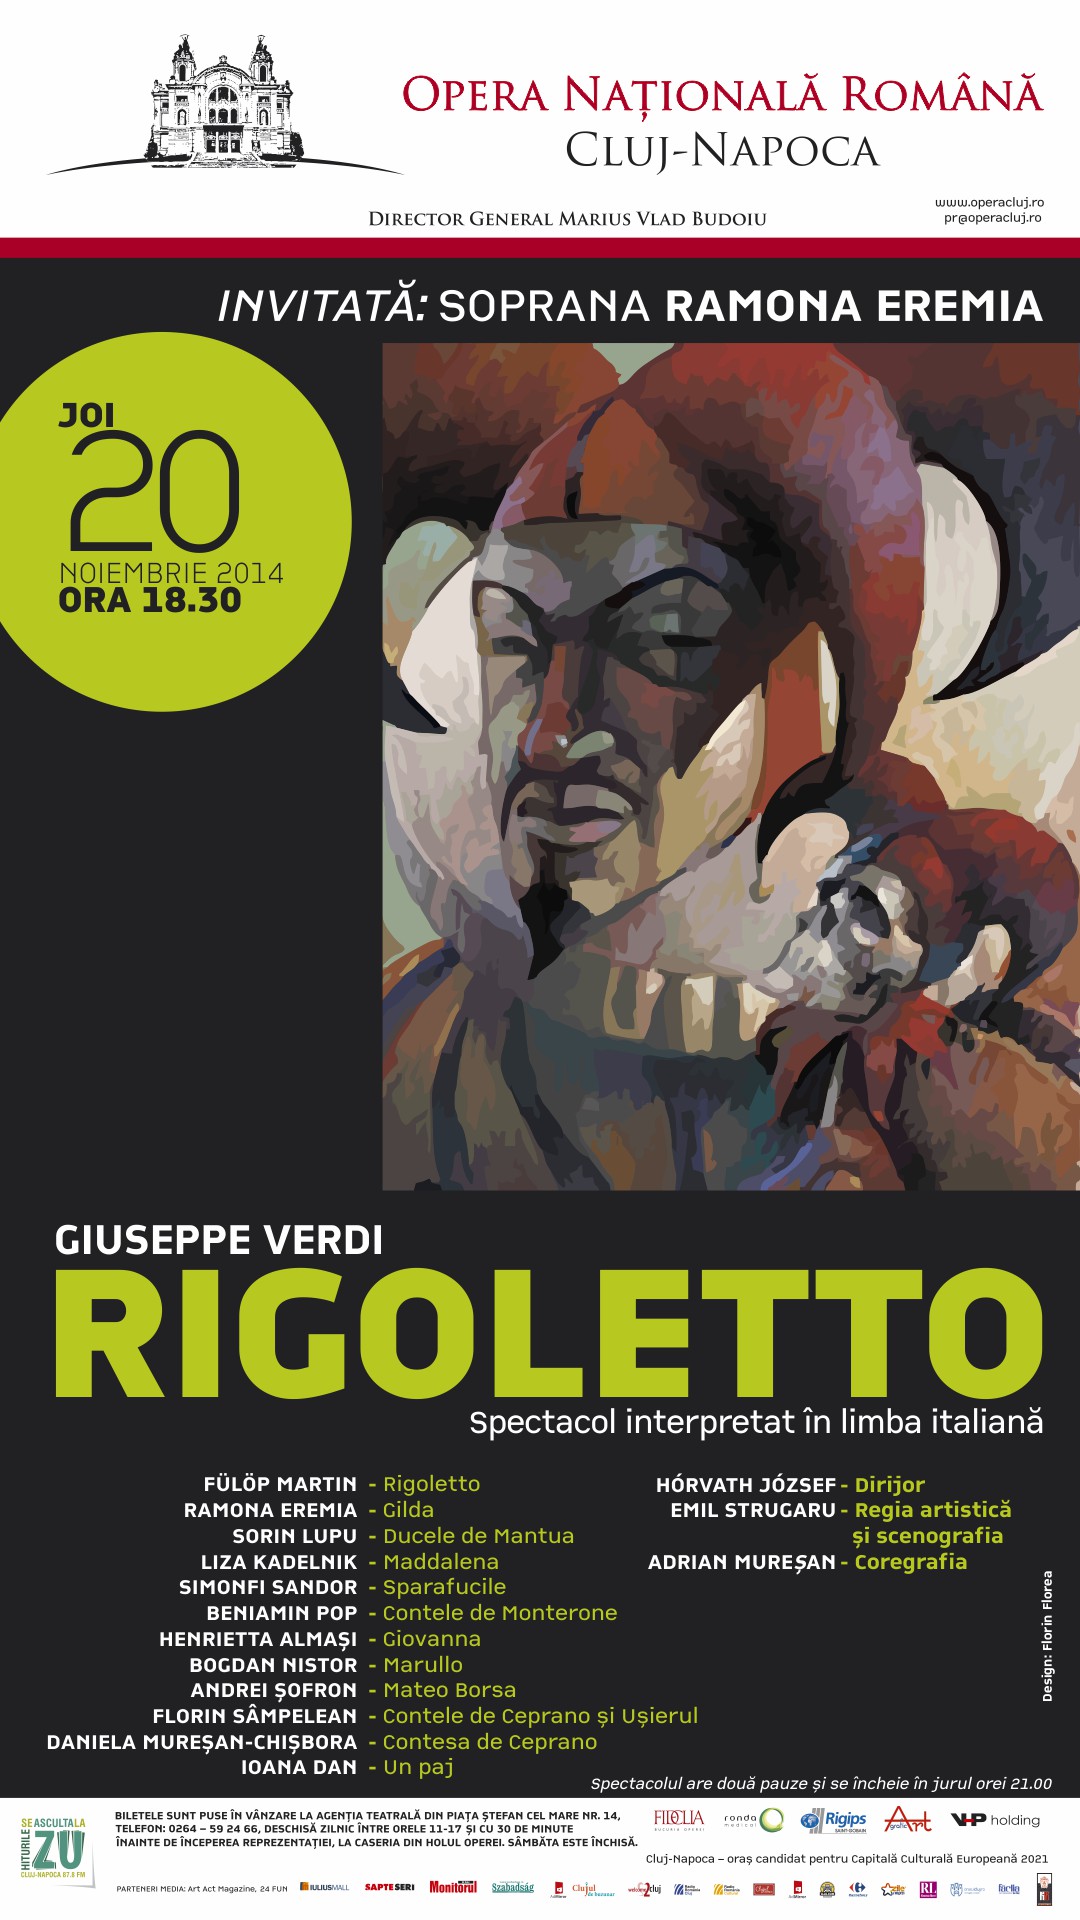 Rigoletto, vestitul bufon, se întoarce la Opera clujeană,  joi, 20 noiembrie 2014